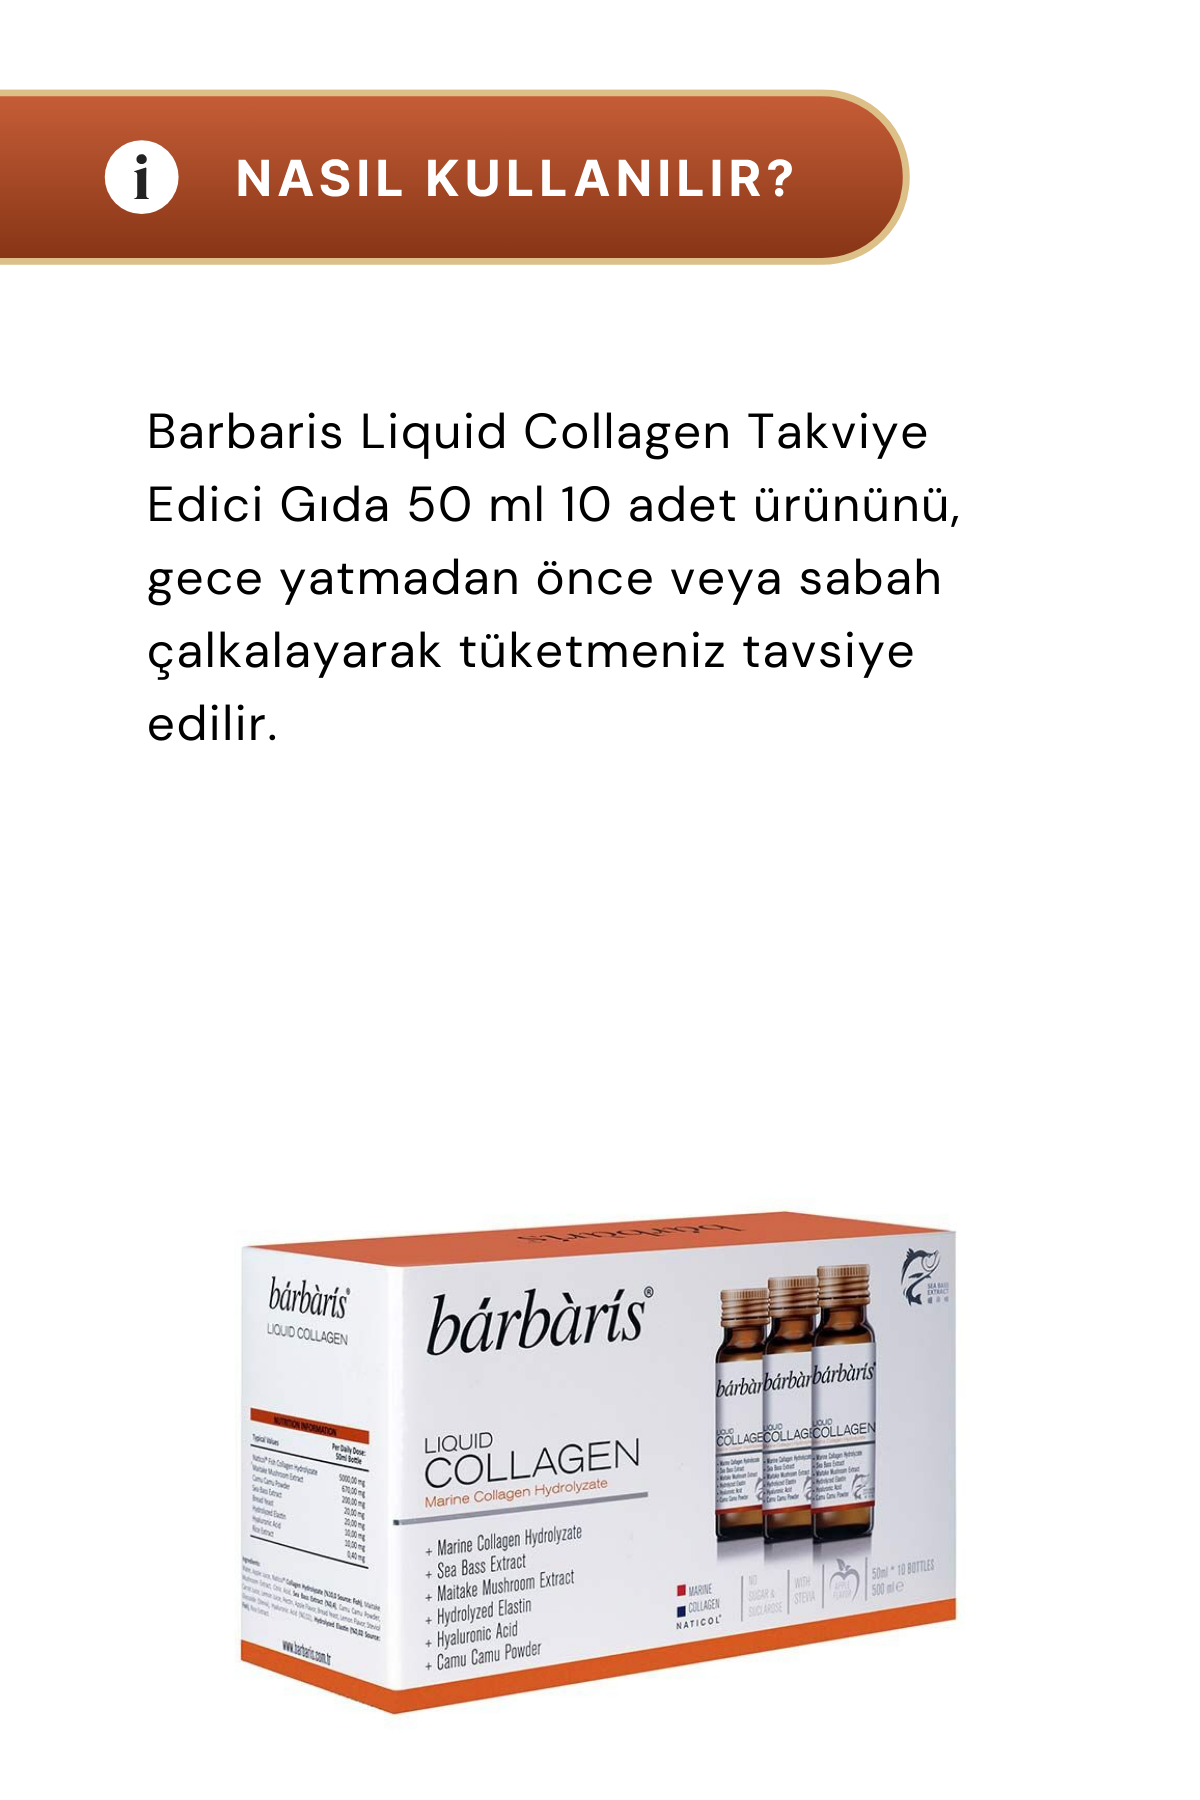 Barbaris Liquid Collagen 10 x 50 ml